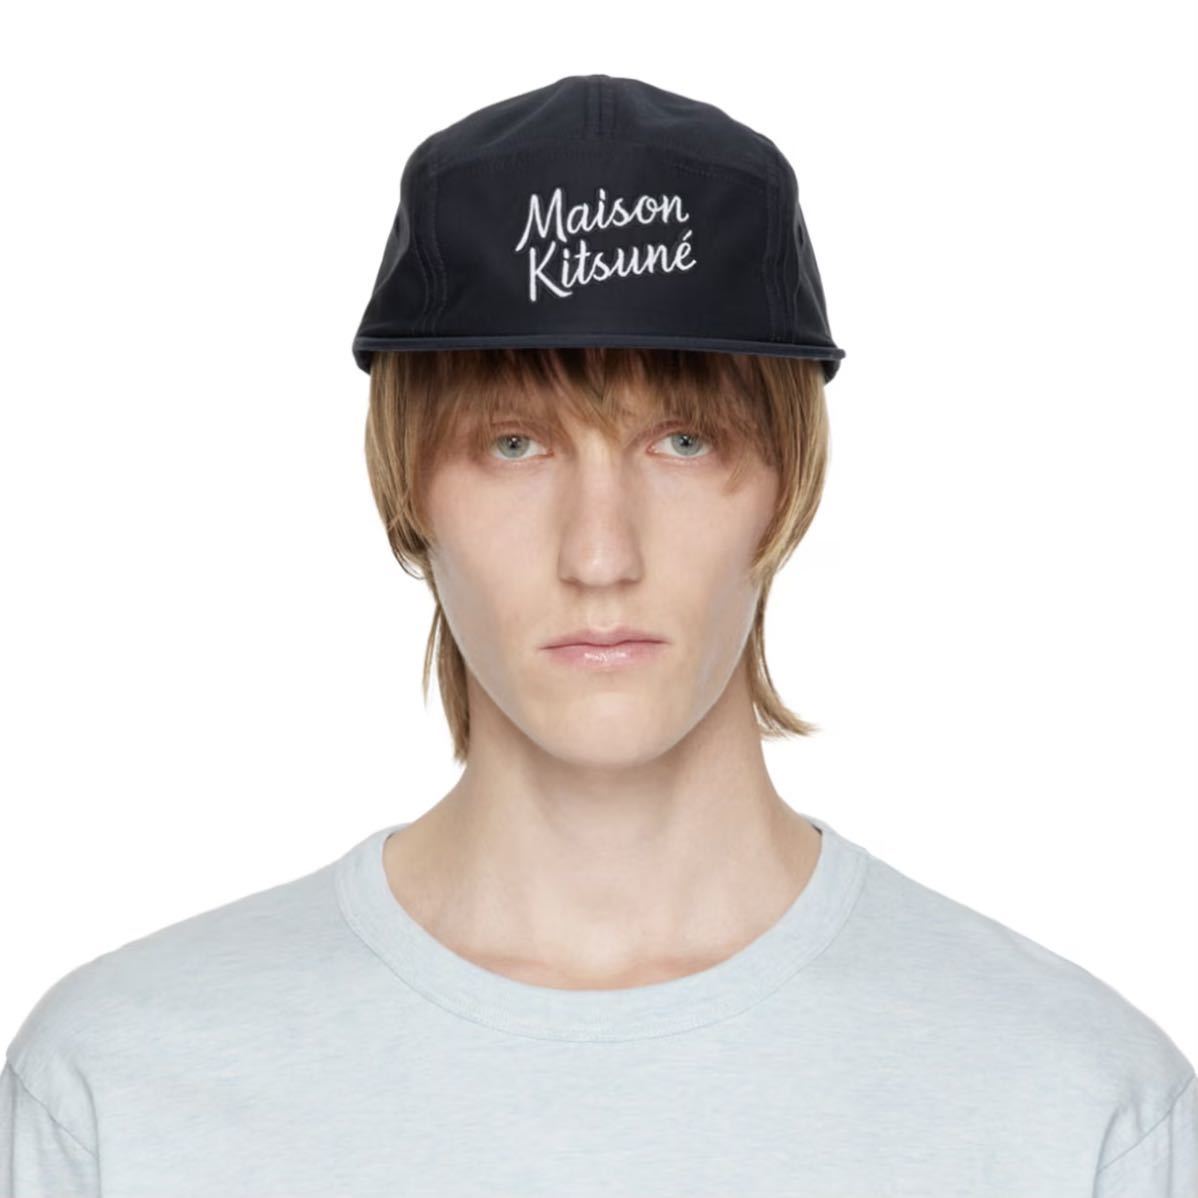 新品未使用 ◆ Maison Kitsune 5Pキャップ ロゴキャップ 帽子 メゾンキツネ ネイビー 紺 ◆